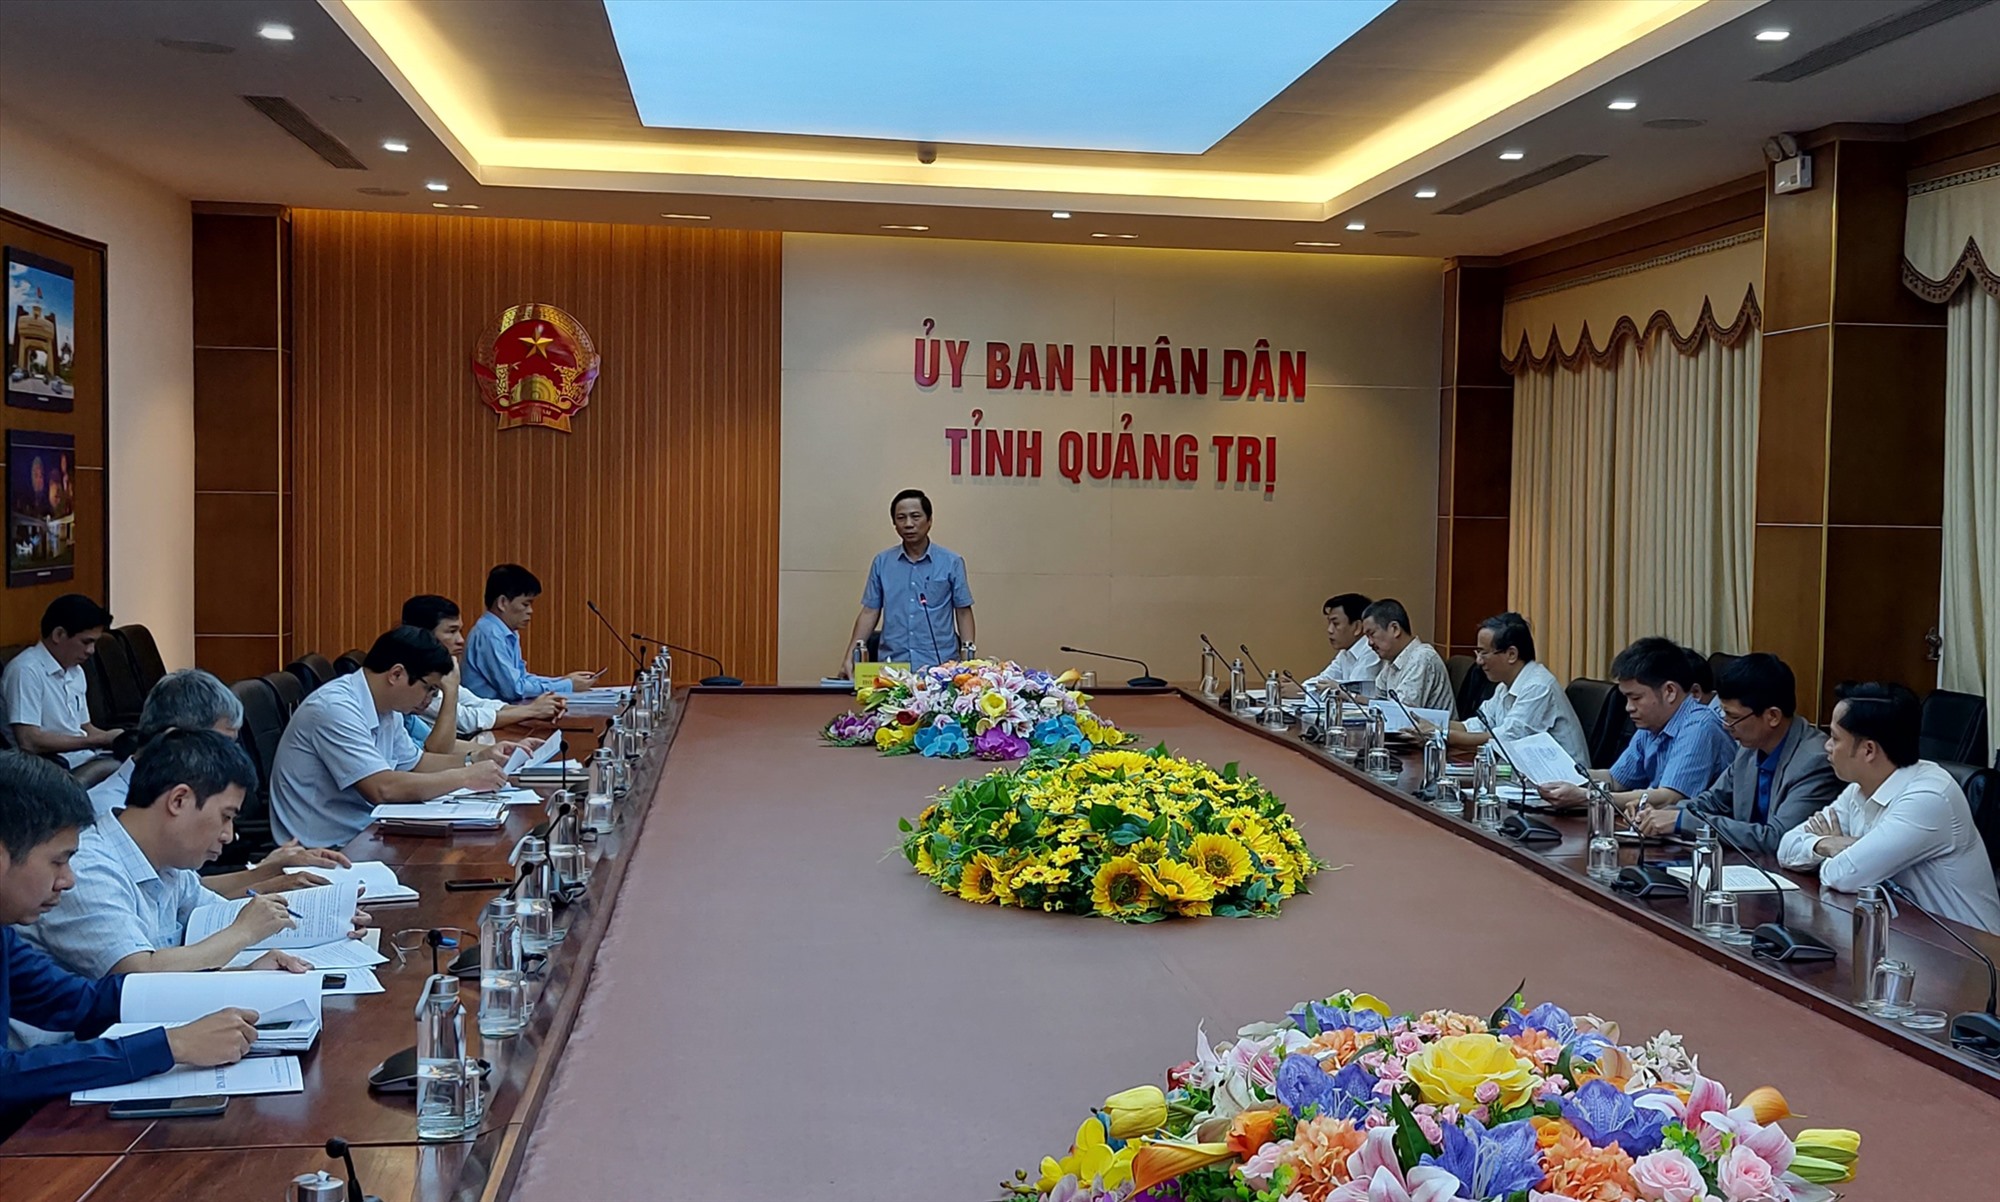 Phó Chủ tịch UBND tỉnh Hoàng Nam phát biểu chỉ đạo tại cuộc họp - Ảnh: N.T.H